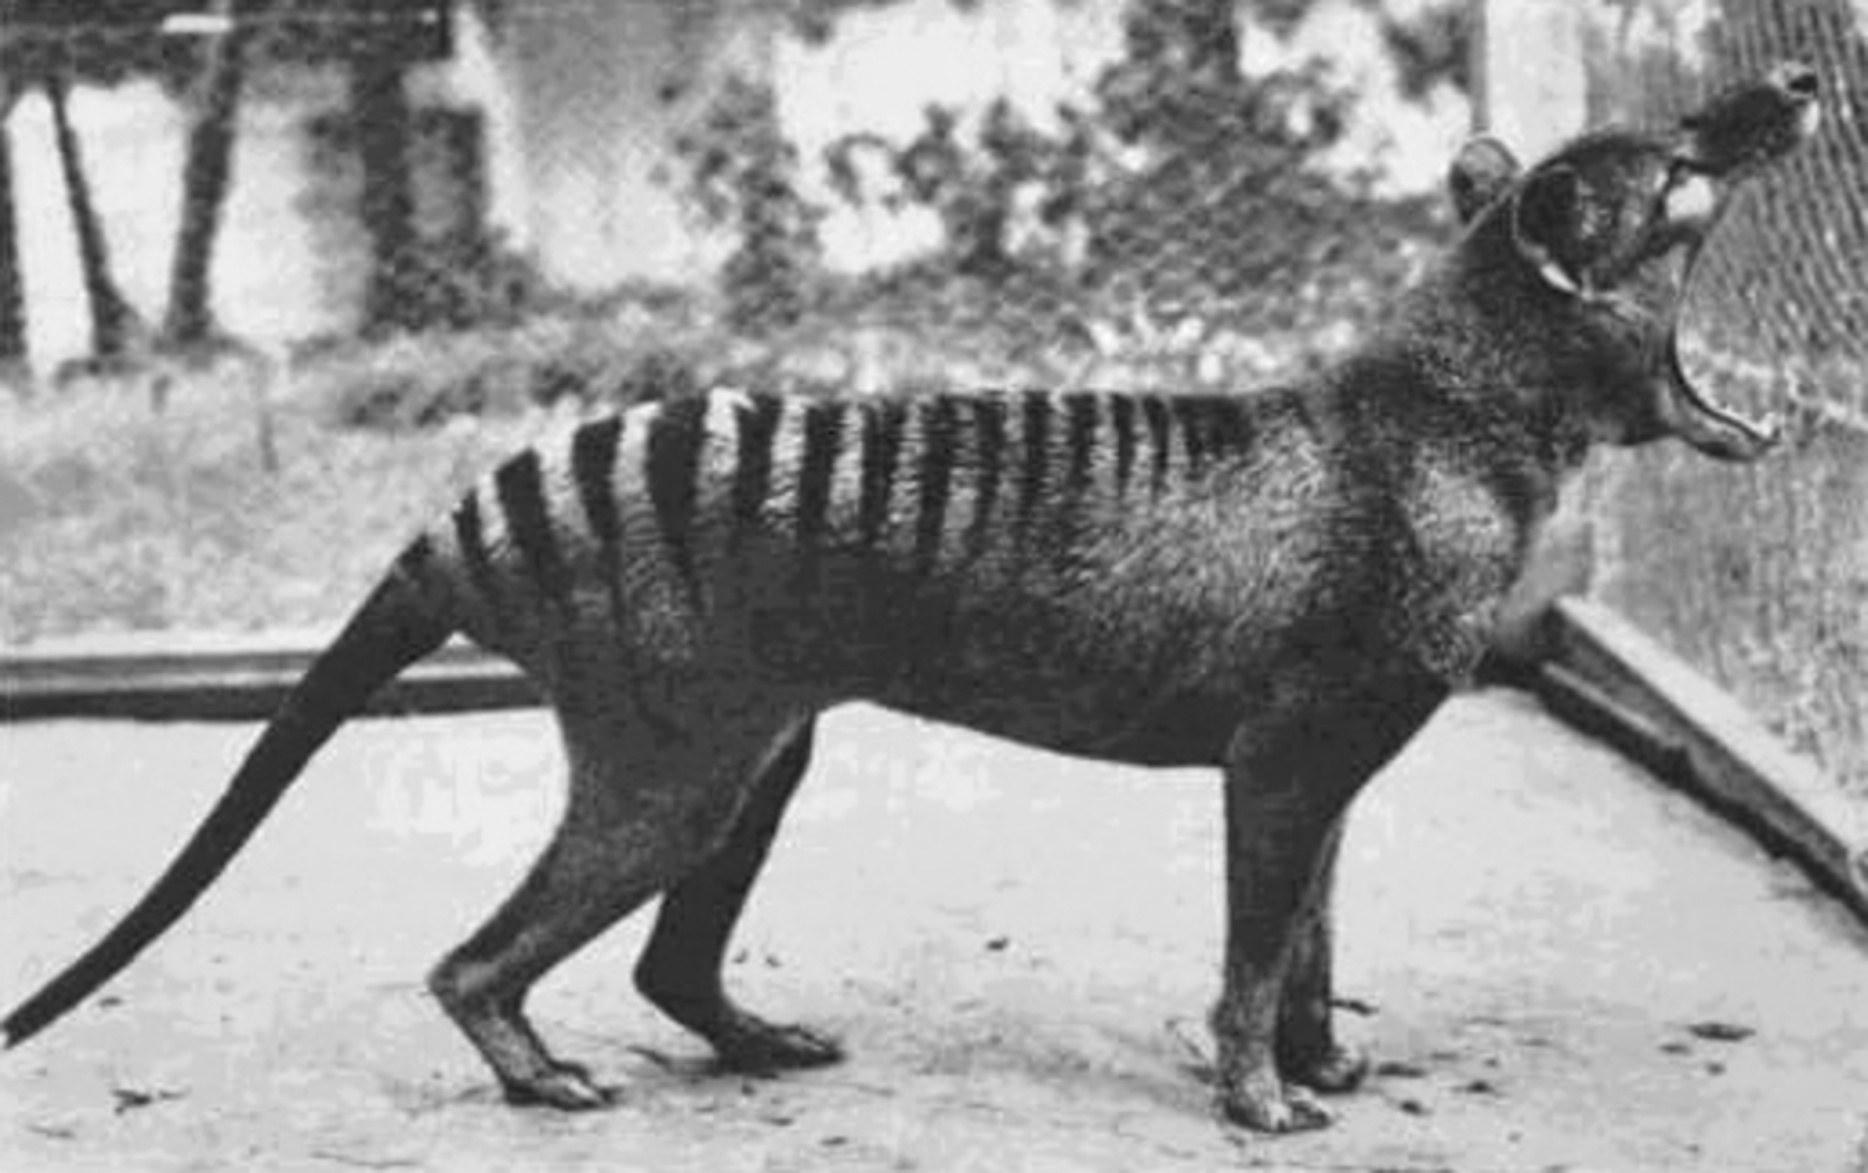 Thylacine waxay daamankeeda u furi kartaa xad aan caadi ahayn: ilaa 80 darajo.